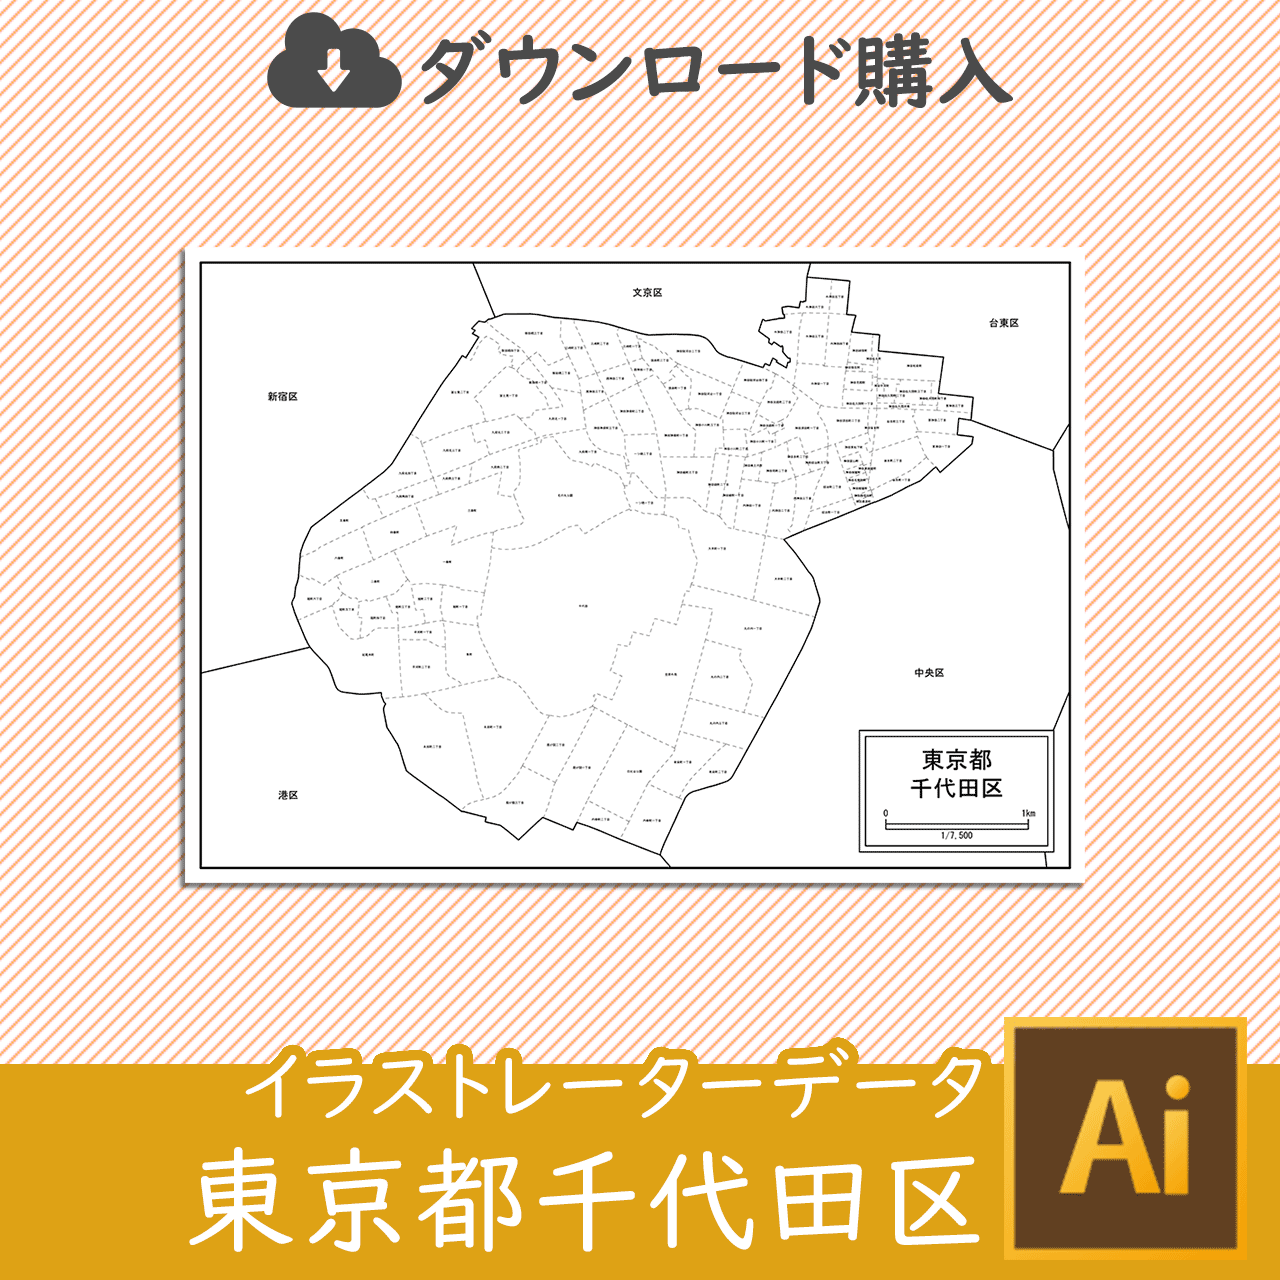 東京都千代田区のaiデータのサムネイル画像